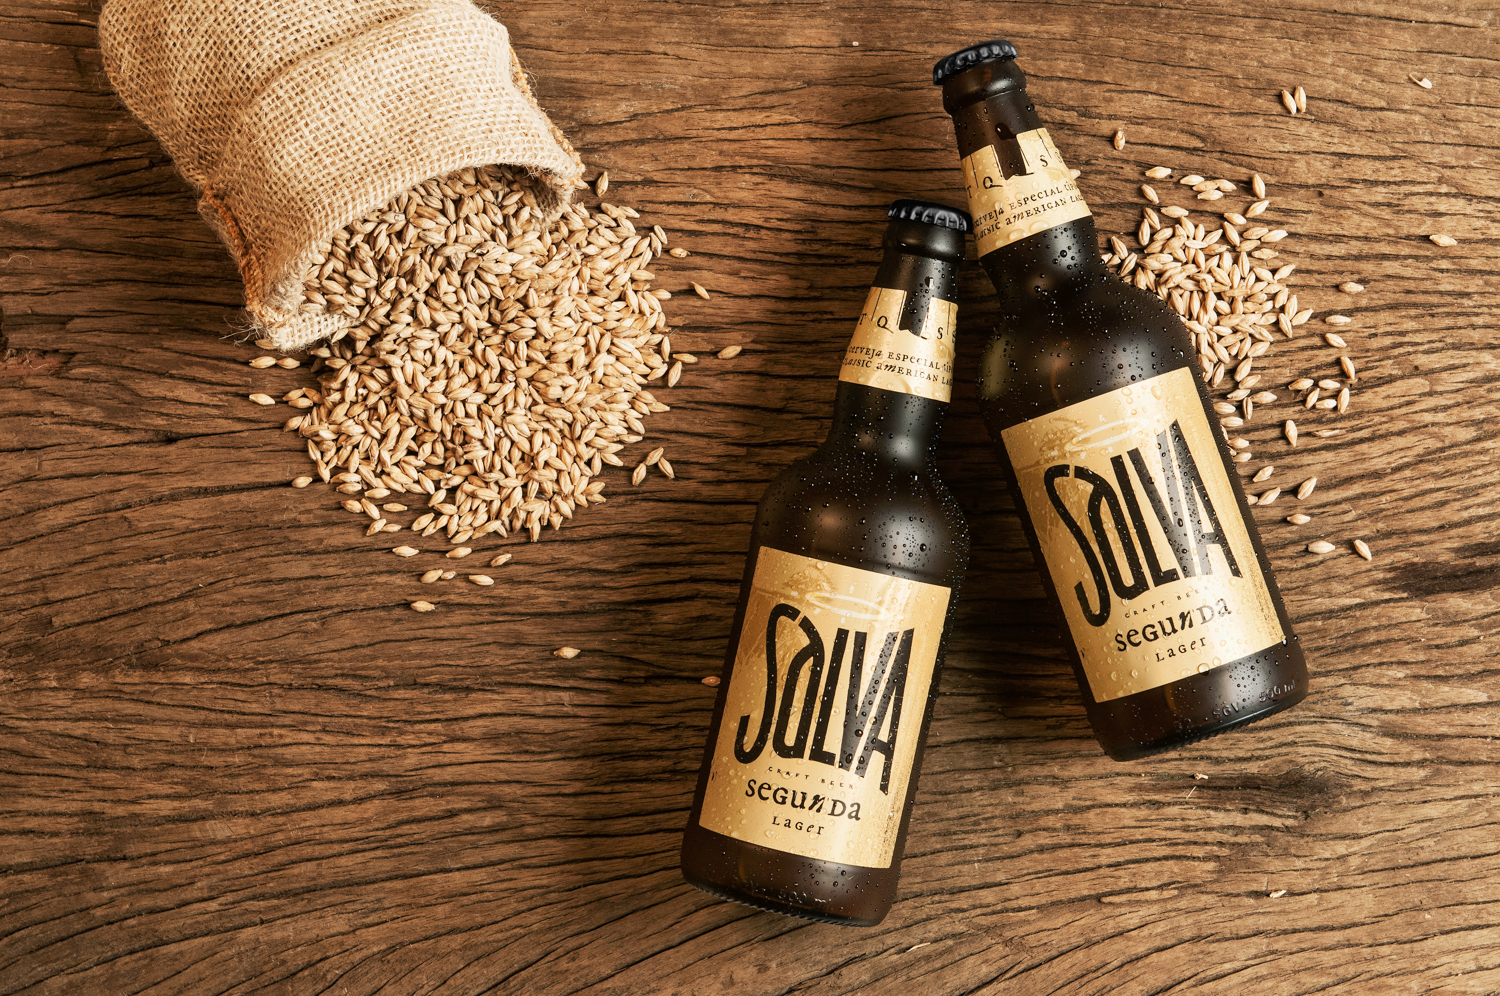 Salva啤酒品牌视觉设计